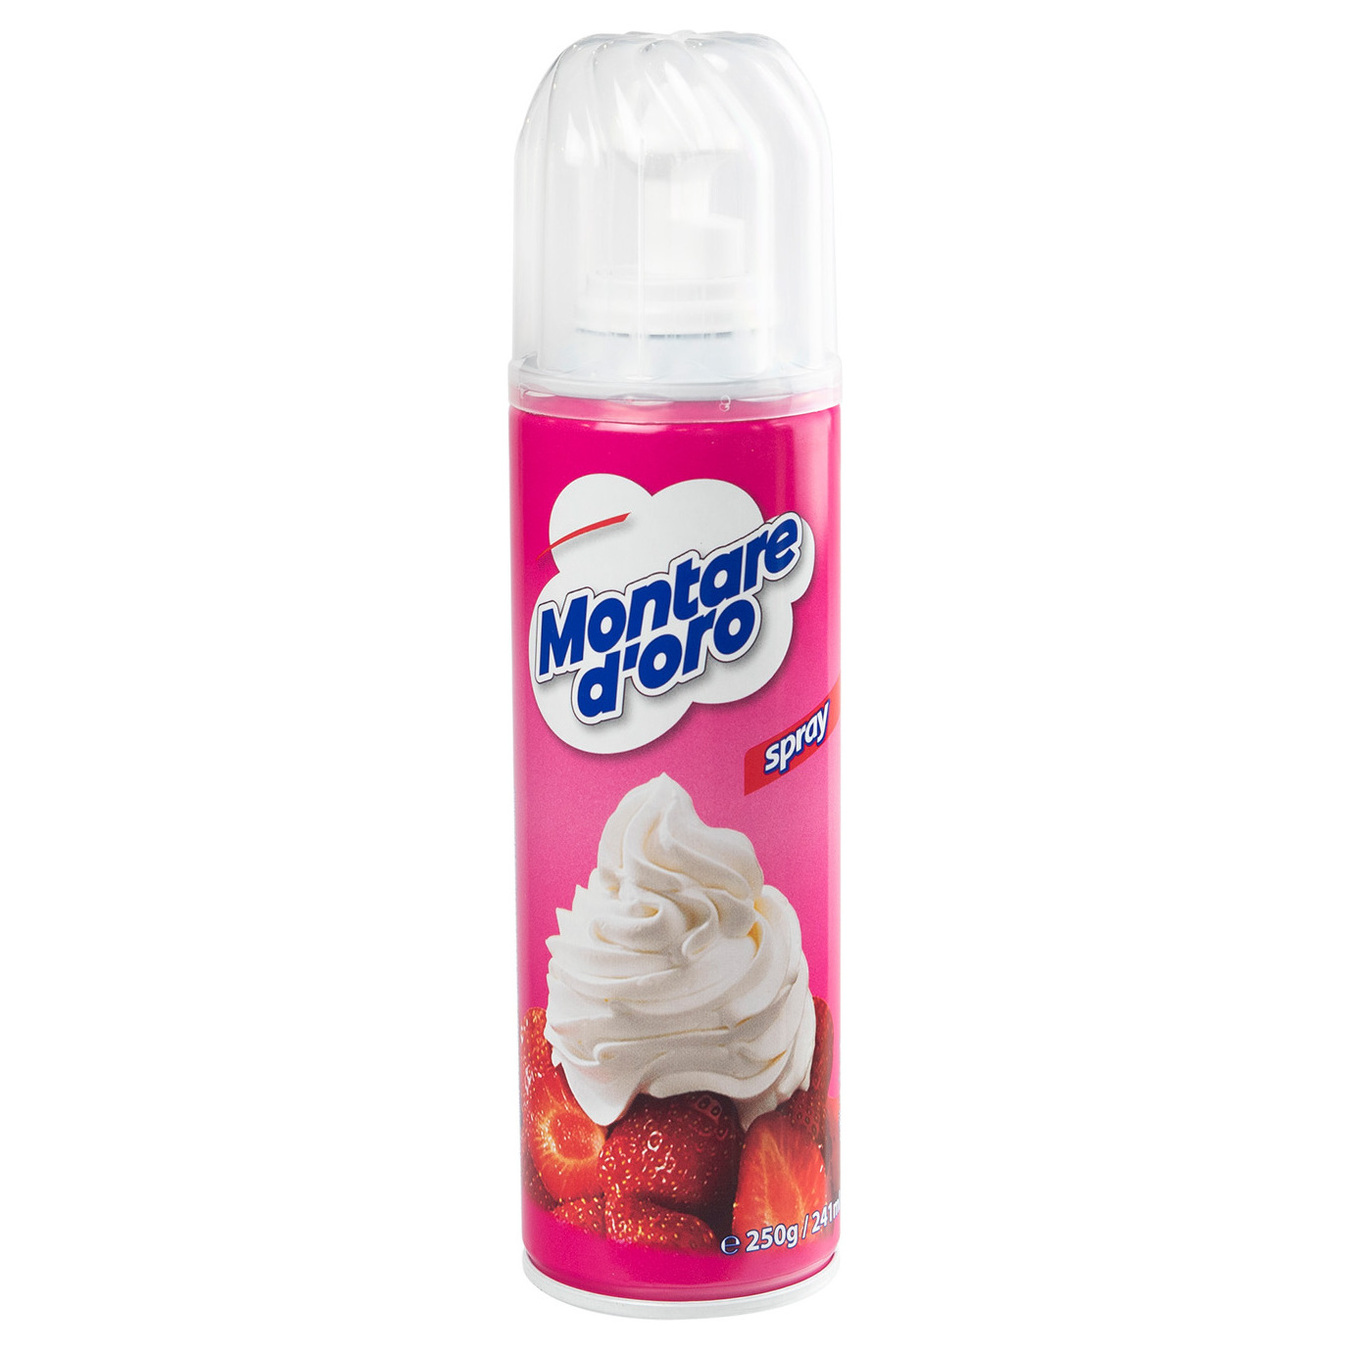 Кондитерский аэрозоль Montare D'oro Spray 20% на основе растительного масла и обезжиренного молока 250г